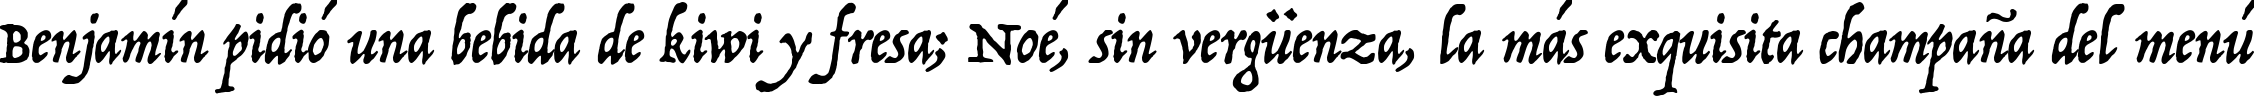 Пример написания шрифтом P22 Operina Romano текста на испанском